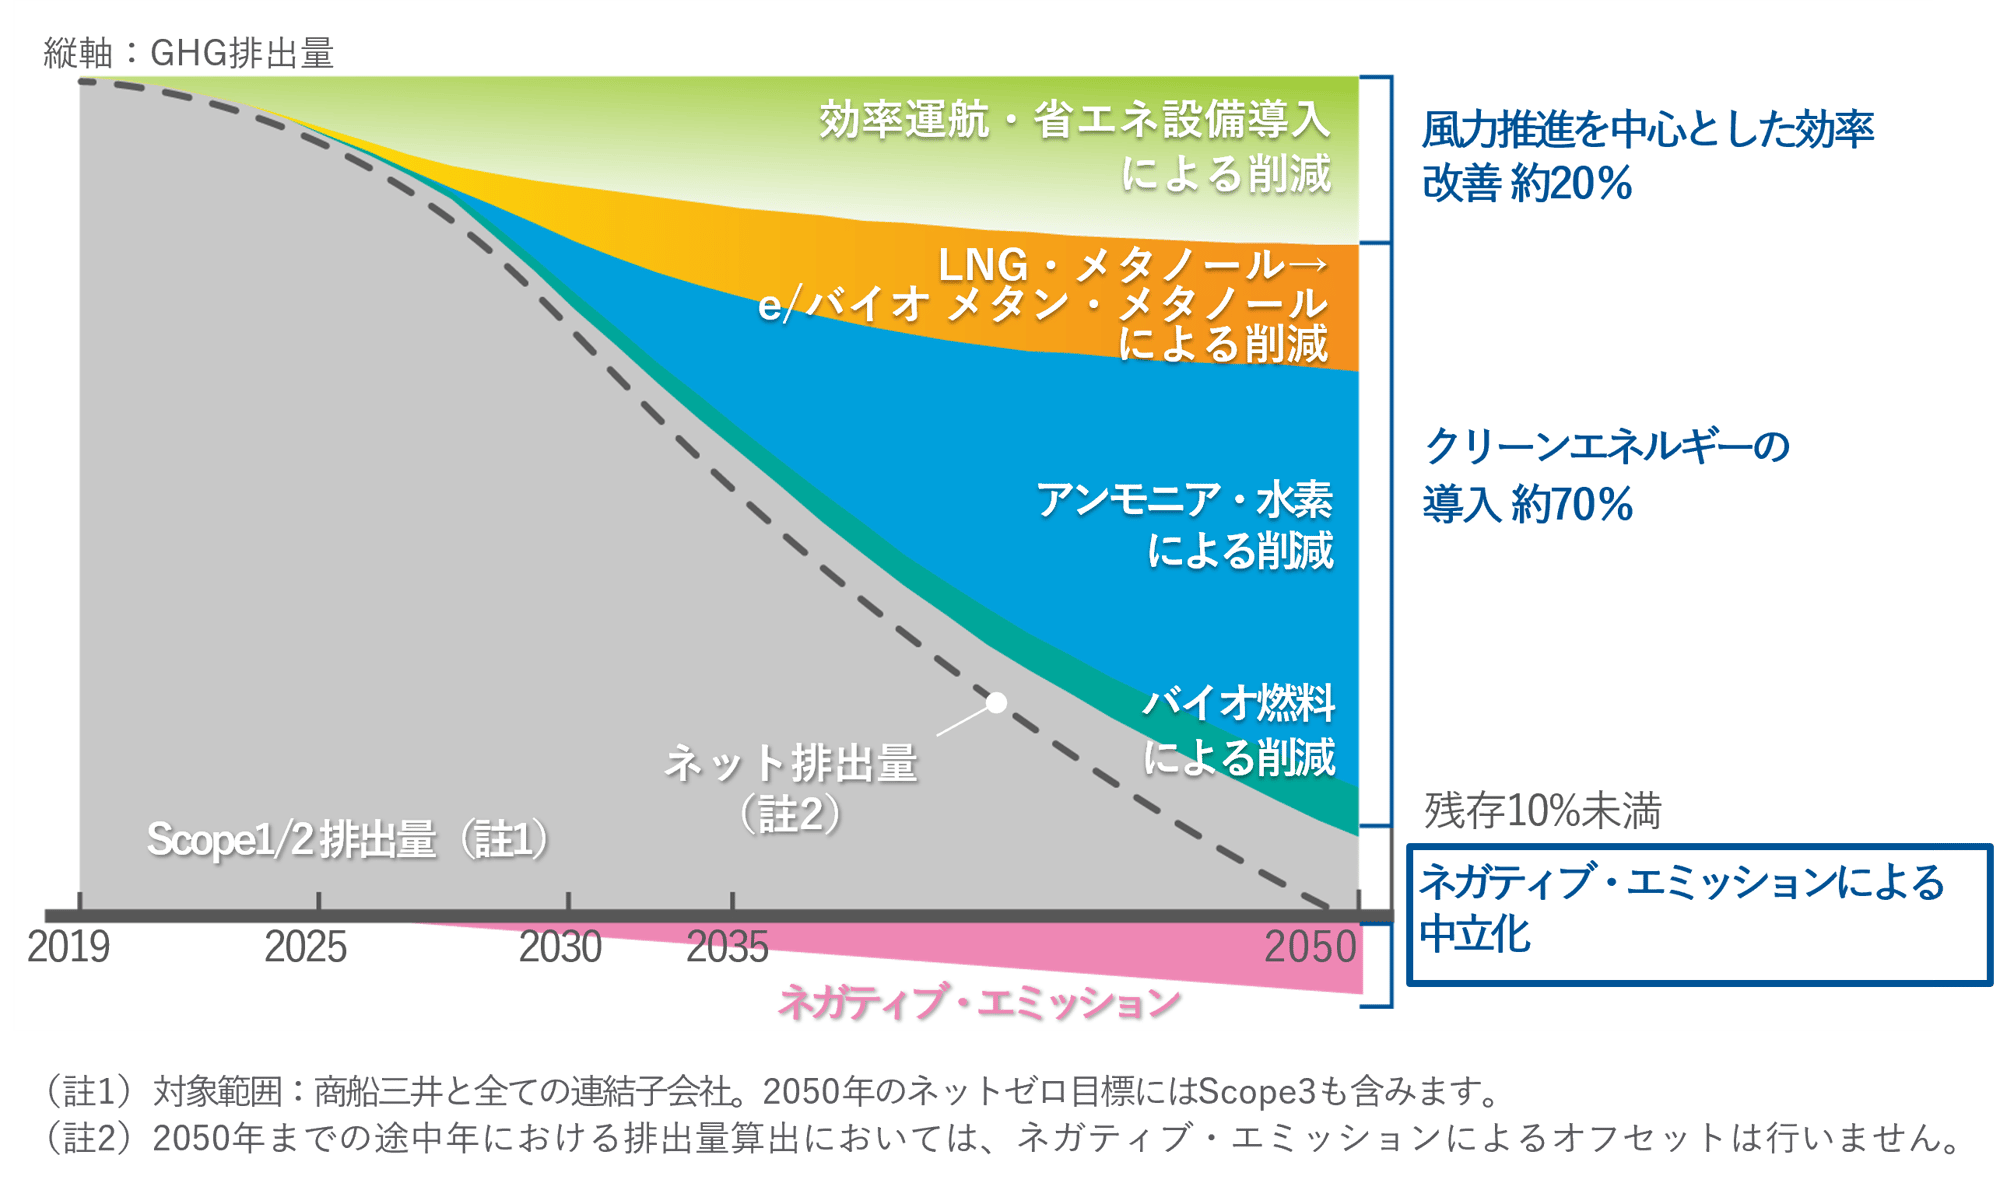 jp low carbon__molgroup net-zero emission pathway